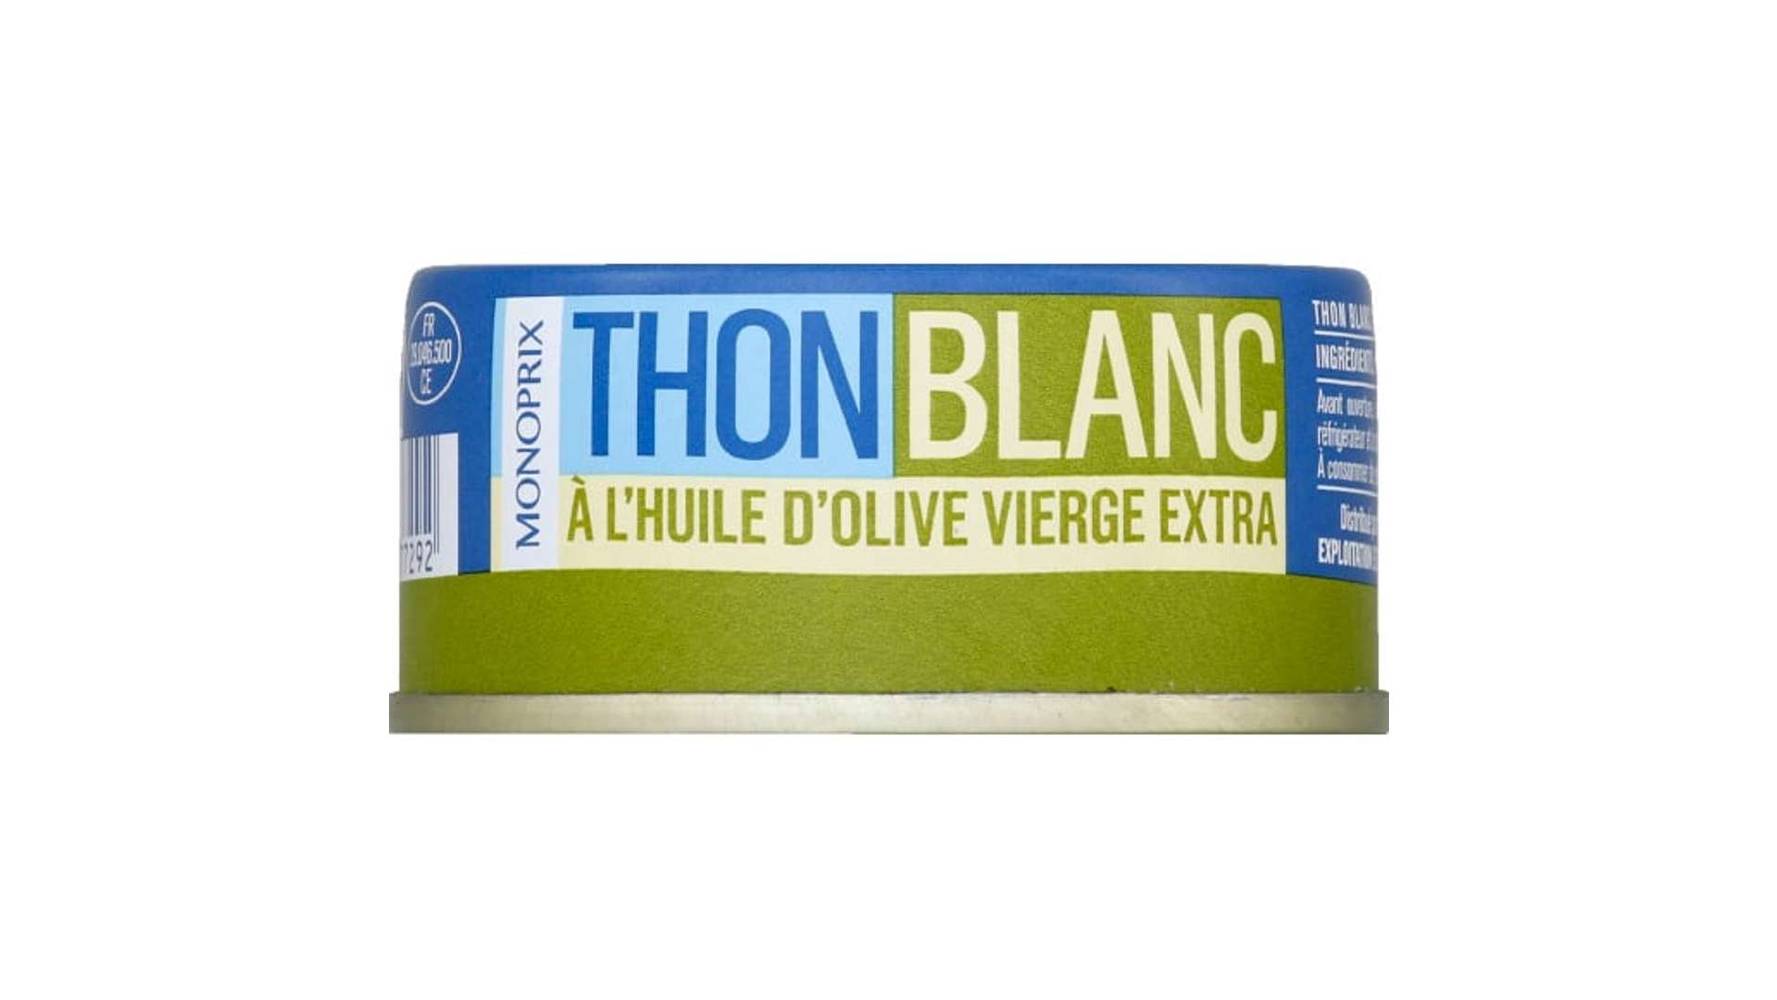 Monoprix Thon blanc @ l huile d olive vierge extra La boîte de 52 g net {goutt{